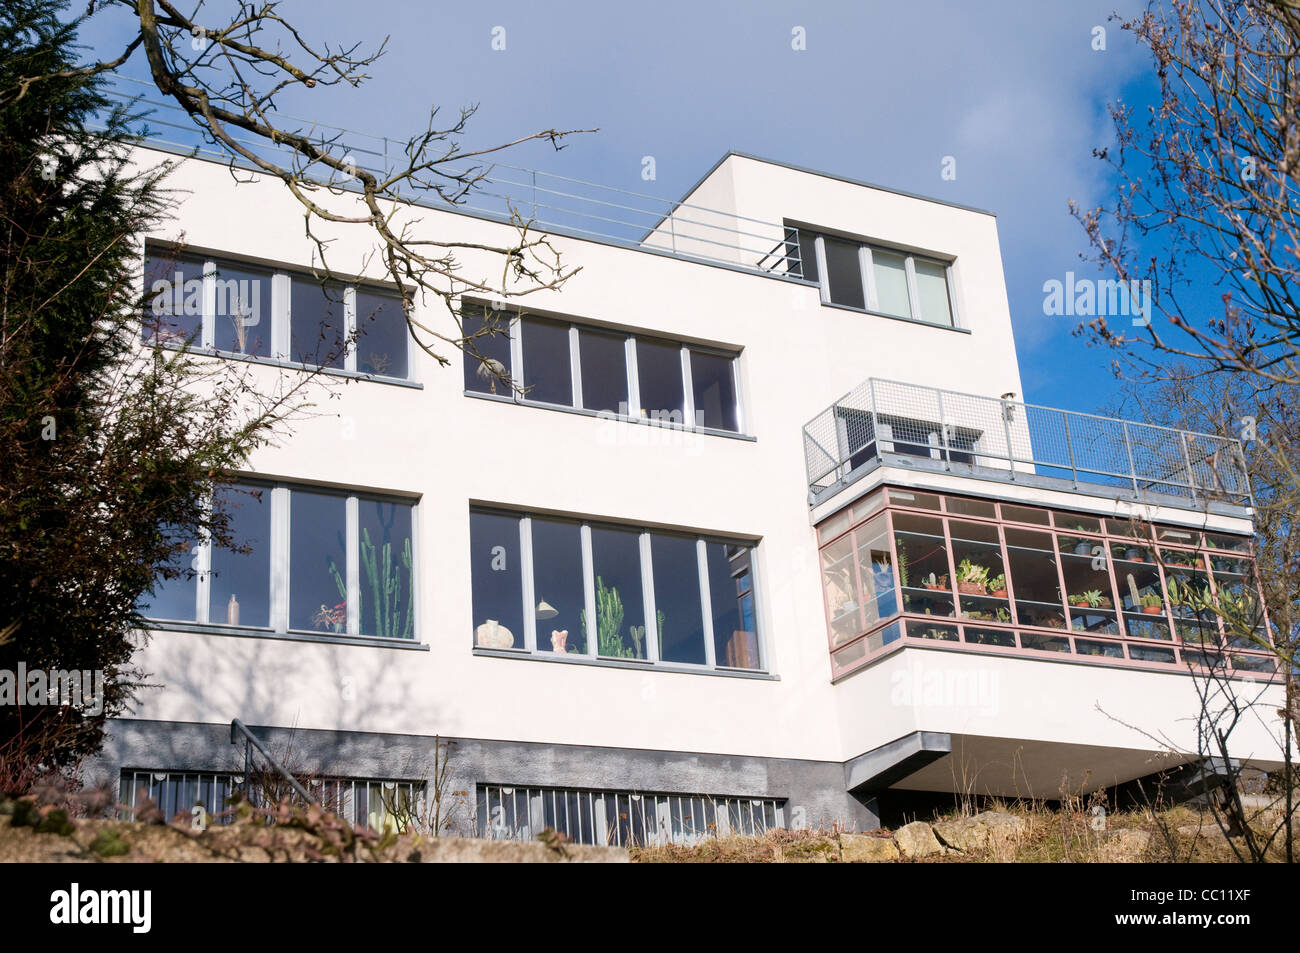 Bauhaus Villa Stockfotos und -bilder Kaufen - Alamy